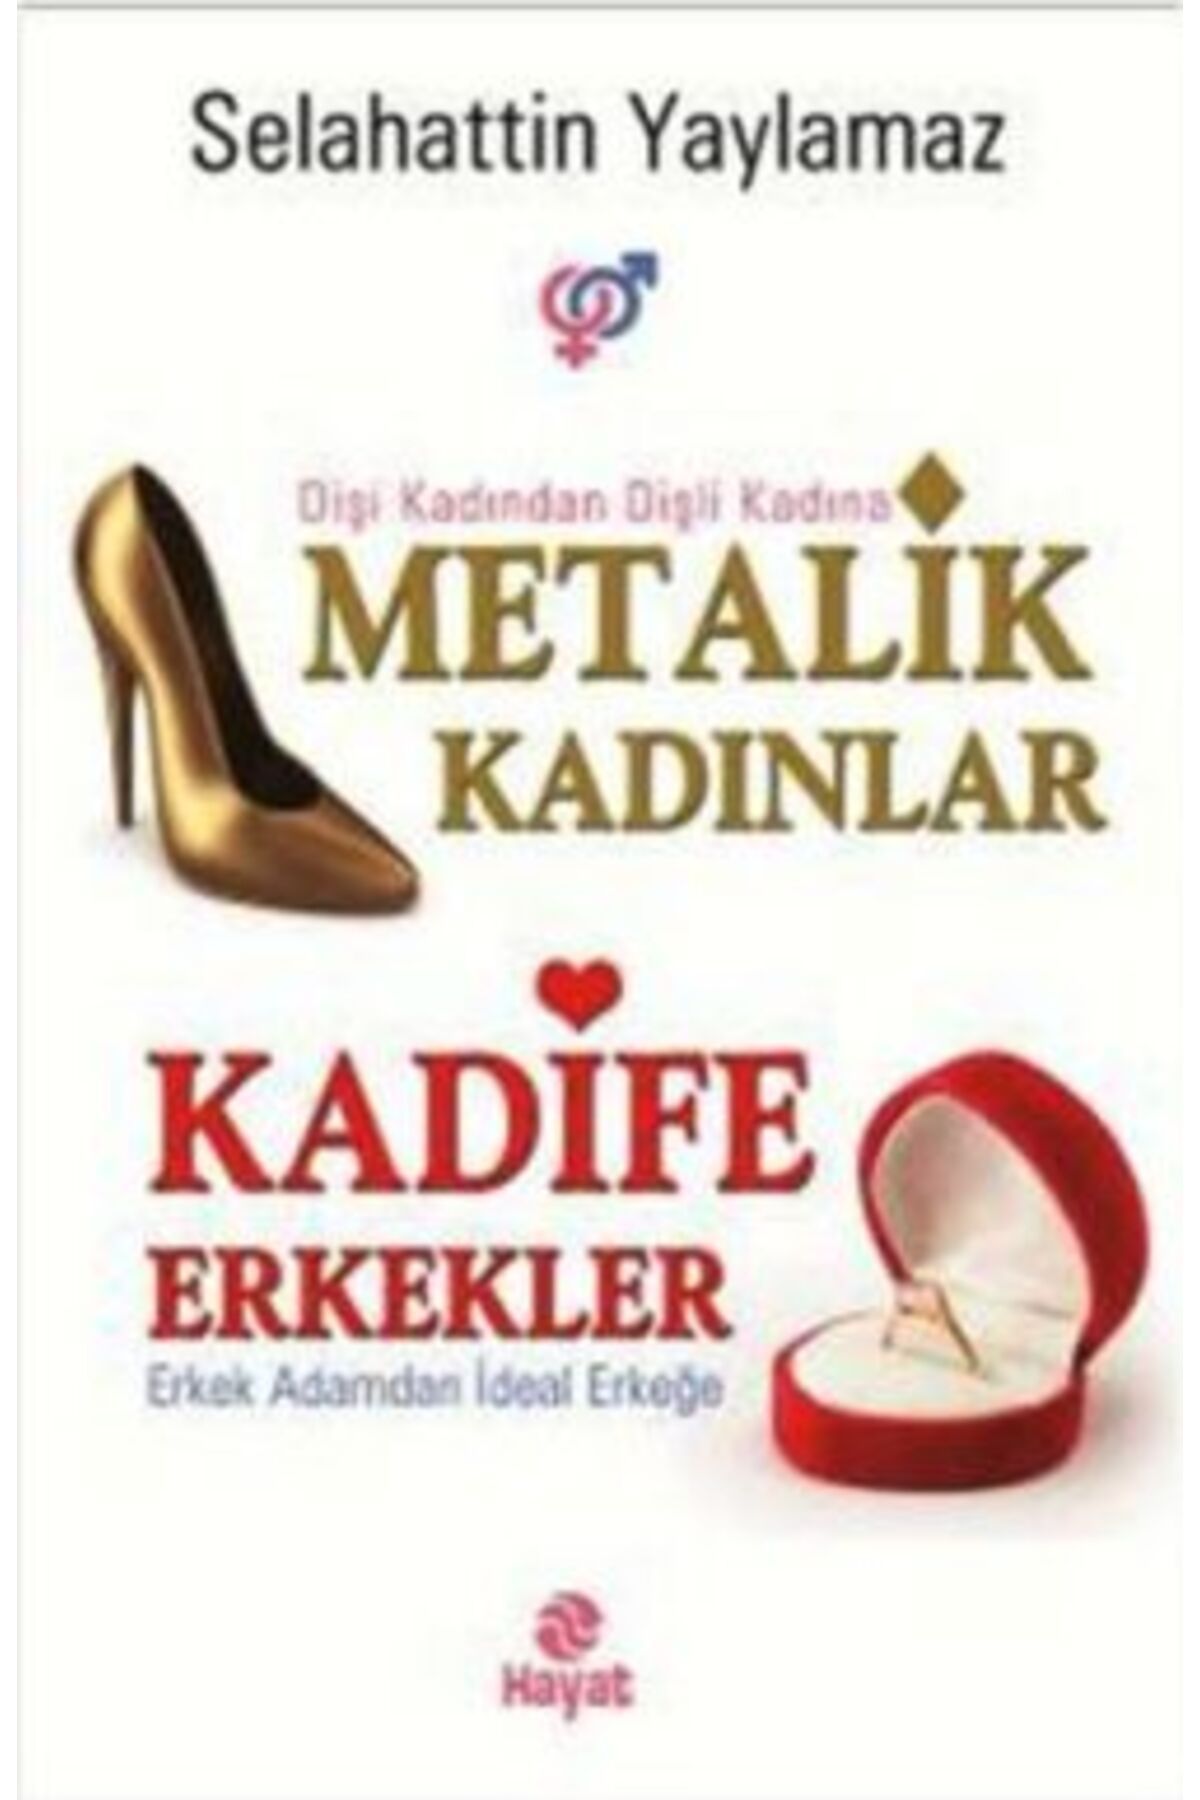 Hayat Yayınları Metalik Kadınlar - Kadife Erkekler kitabı - Selahattin Yaylamaz - Hayat Yayınları